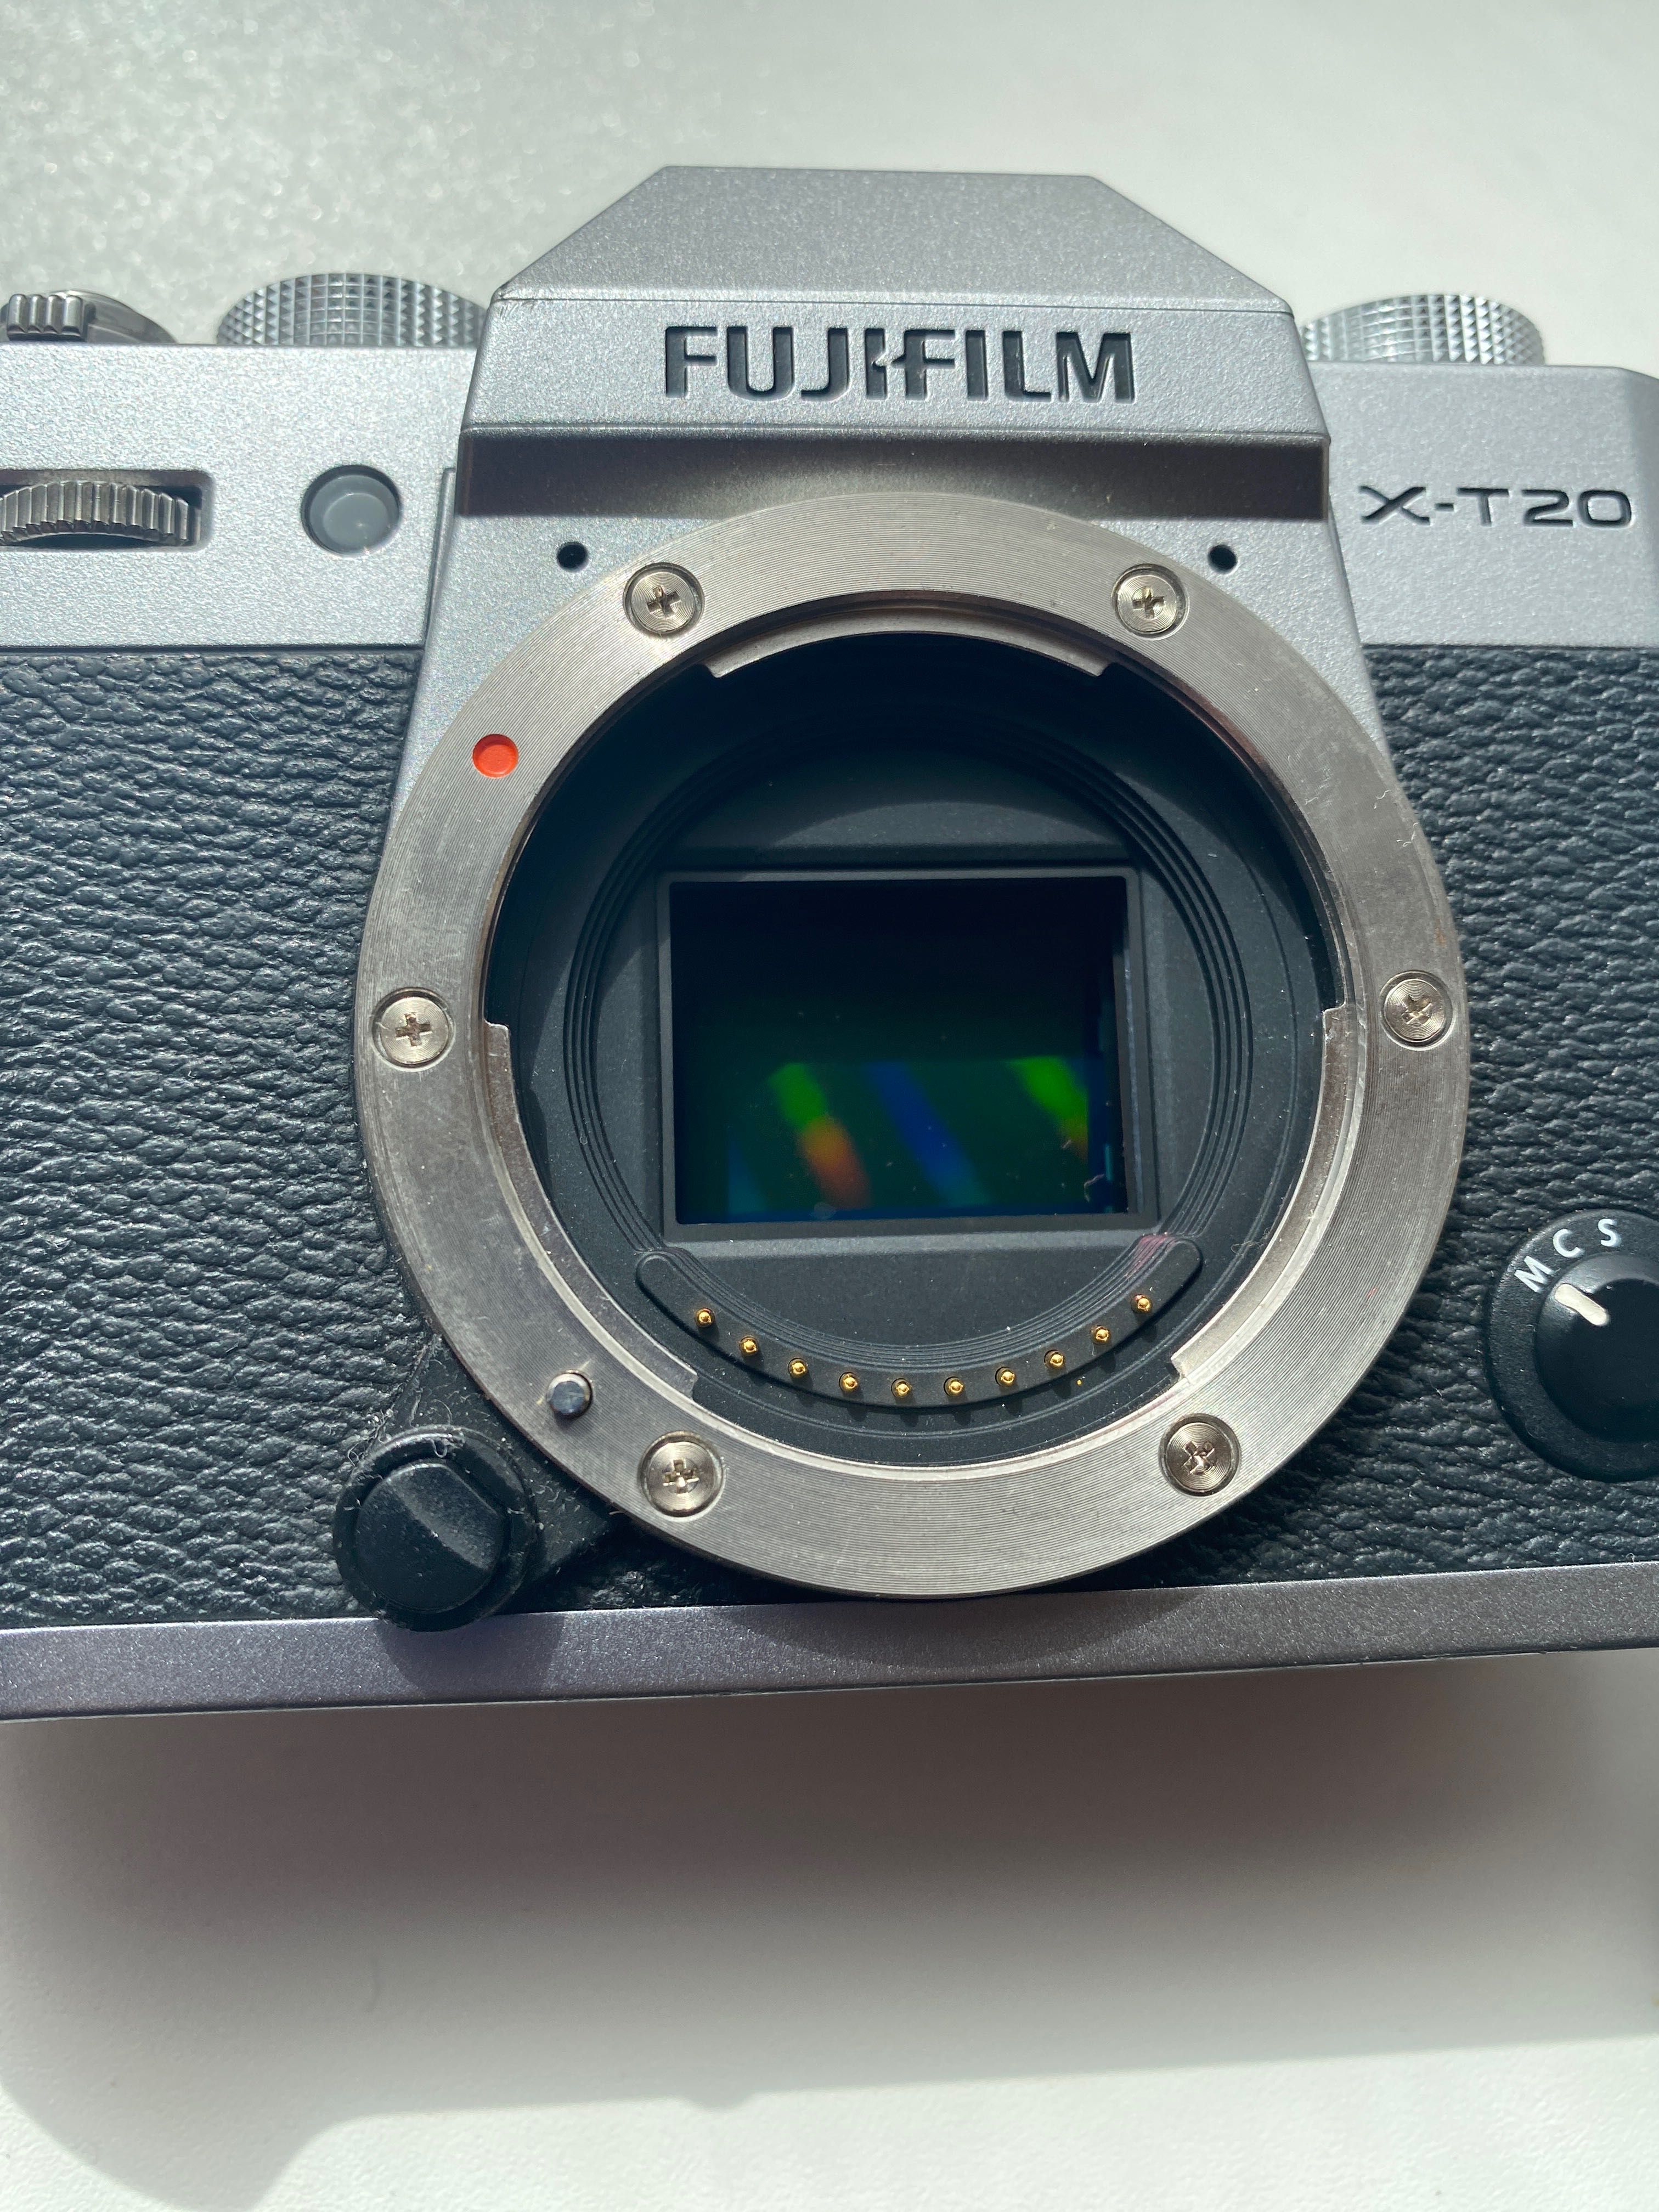 Fujifilm xt20, obiectiv xf 18-55mm, F2.8-4 R LM OIS